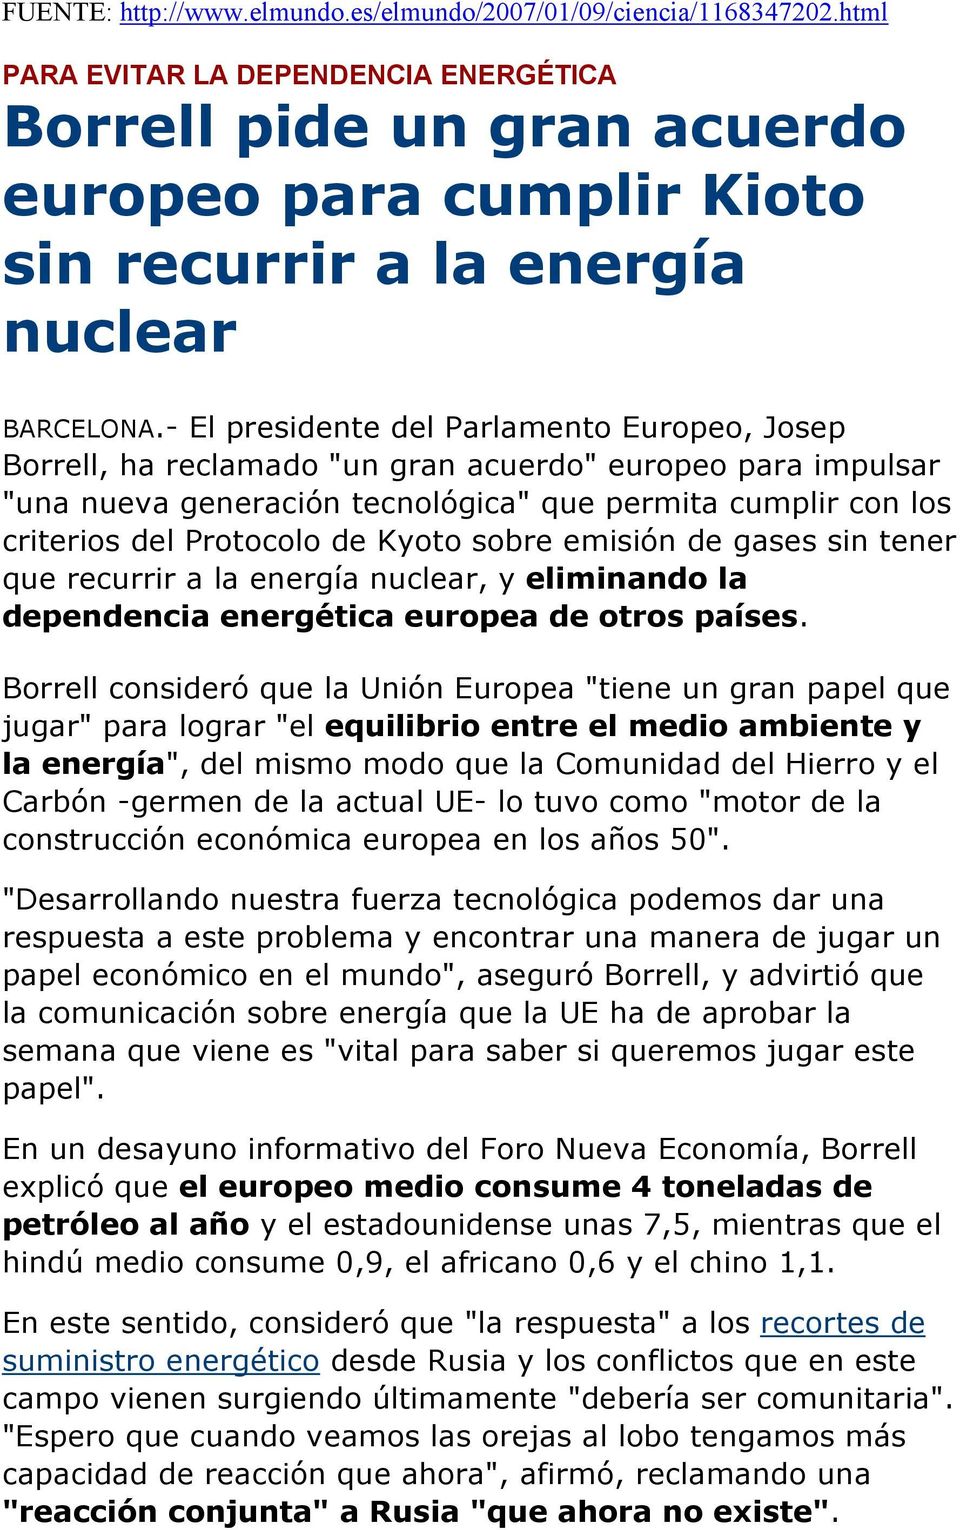 - El presidente del Parlamento Europeo, Josep Borrell, ha reclamado "un gran acuerdo" europeo para impulsar "una nueva generación tecnológica" que permita cumplir con los criterios del Protocolo de